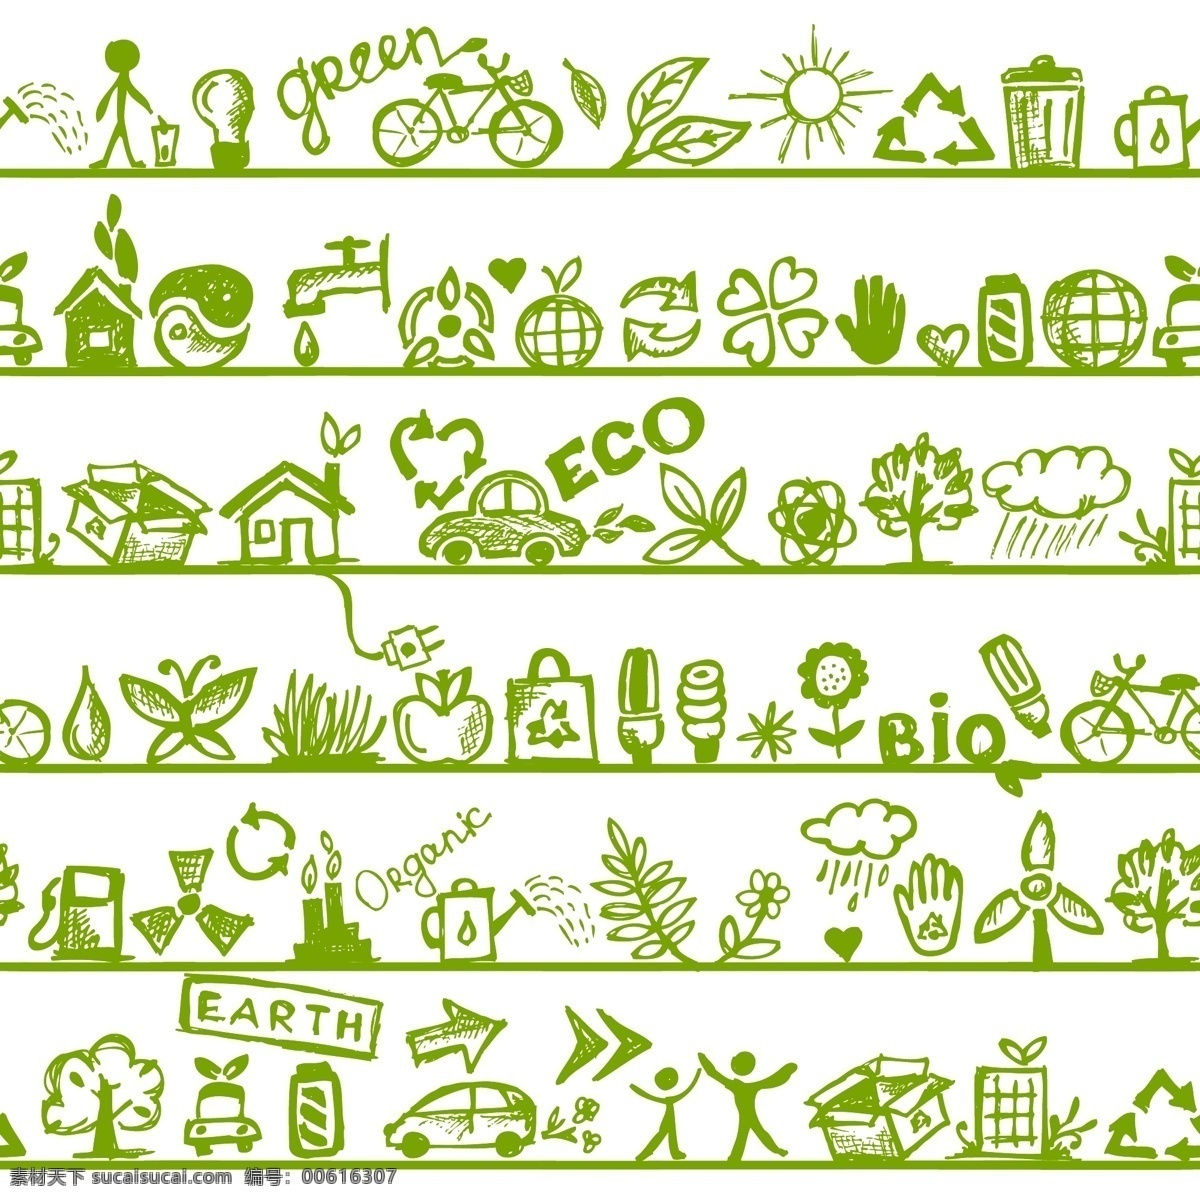 手绘 生态 环保 矢量图 环保时尚 绿色环保 手绘生态环保